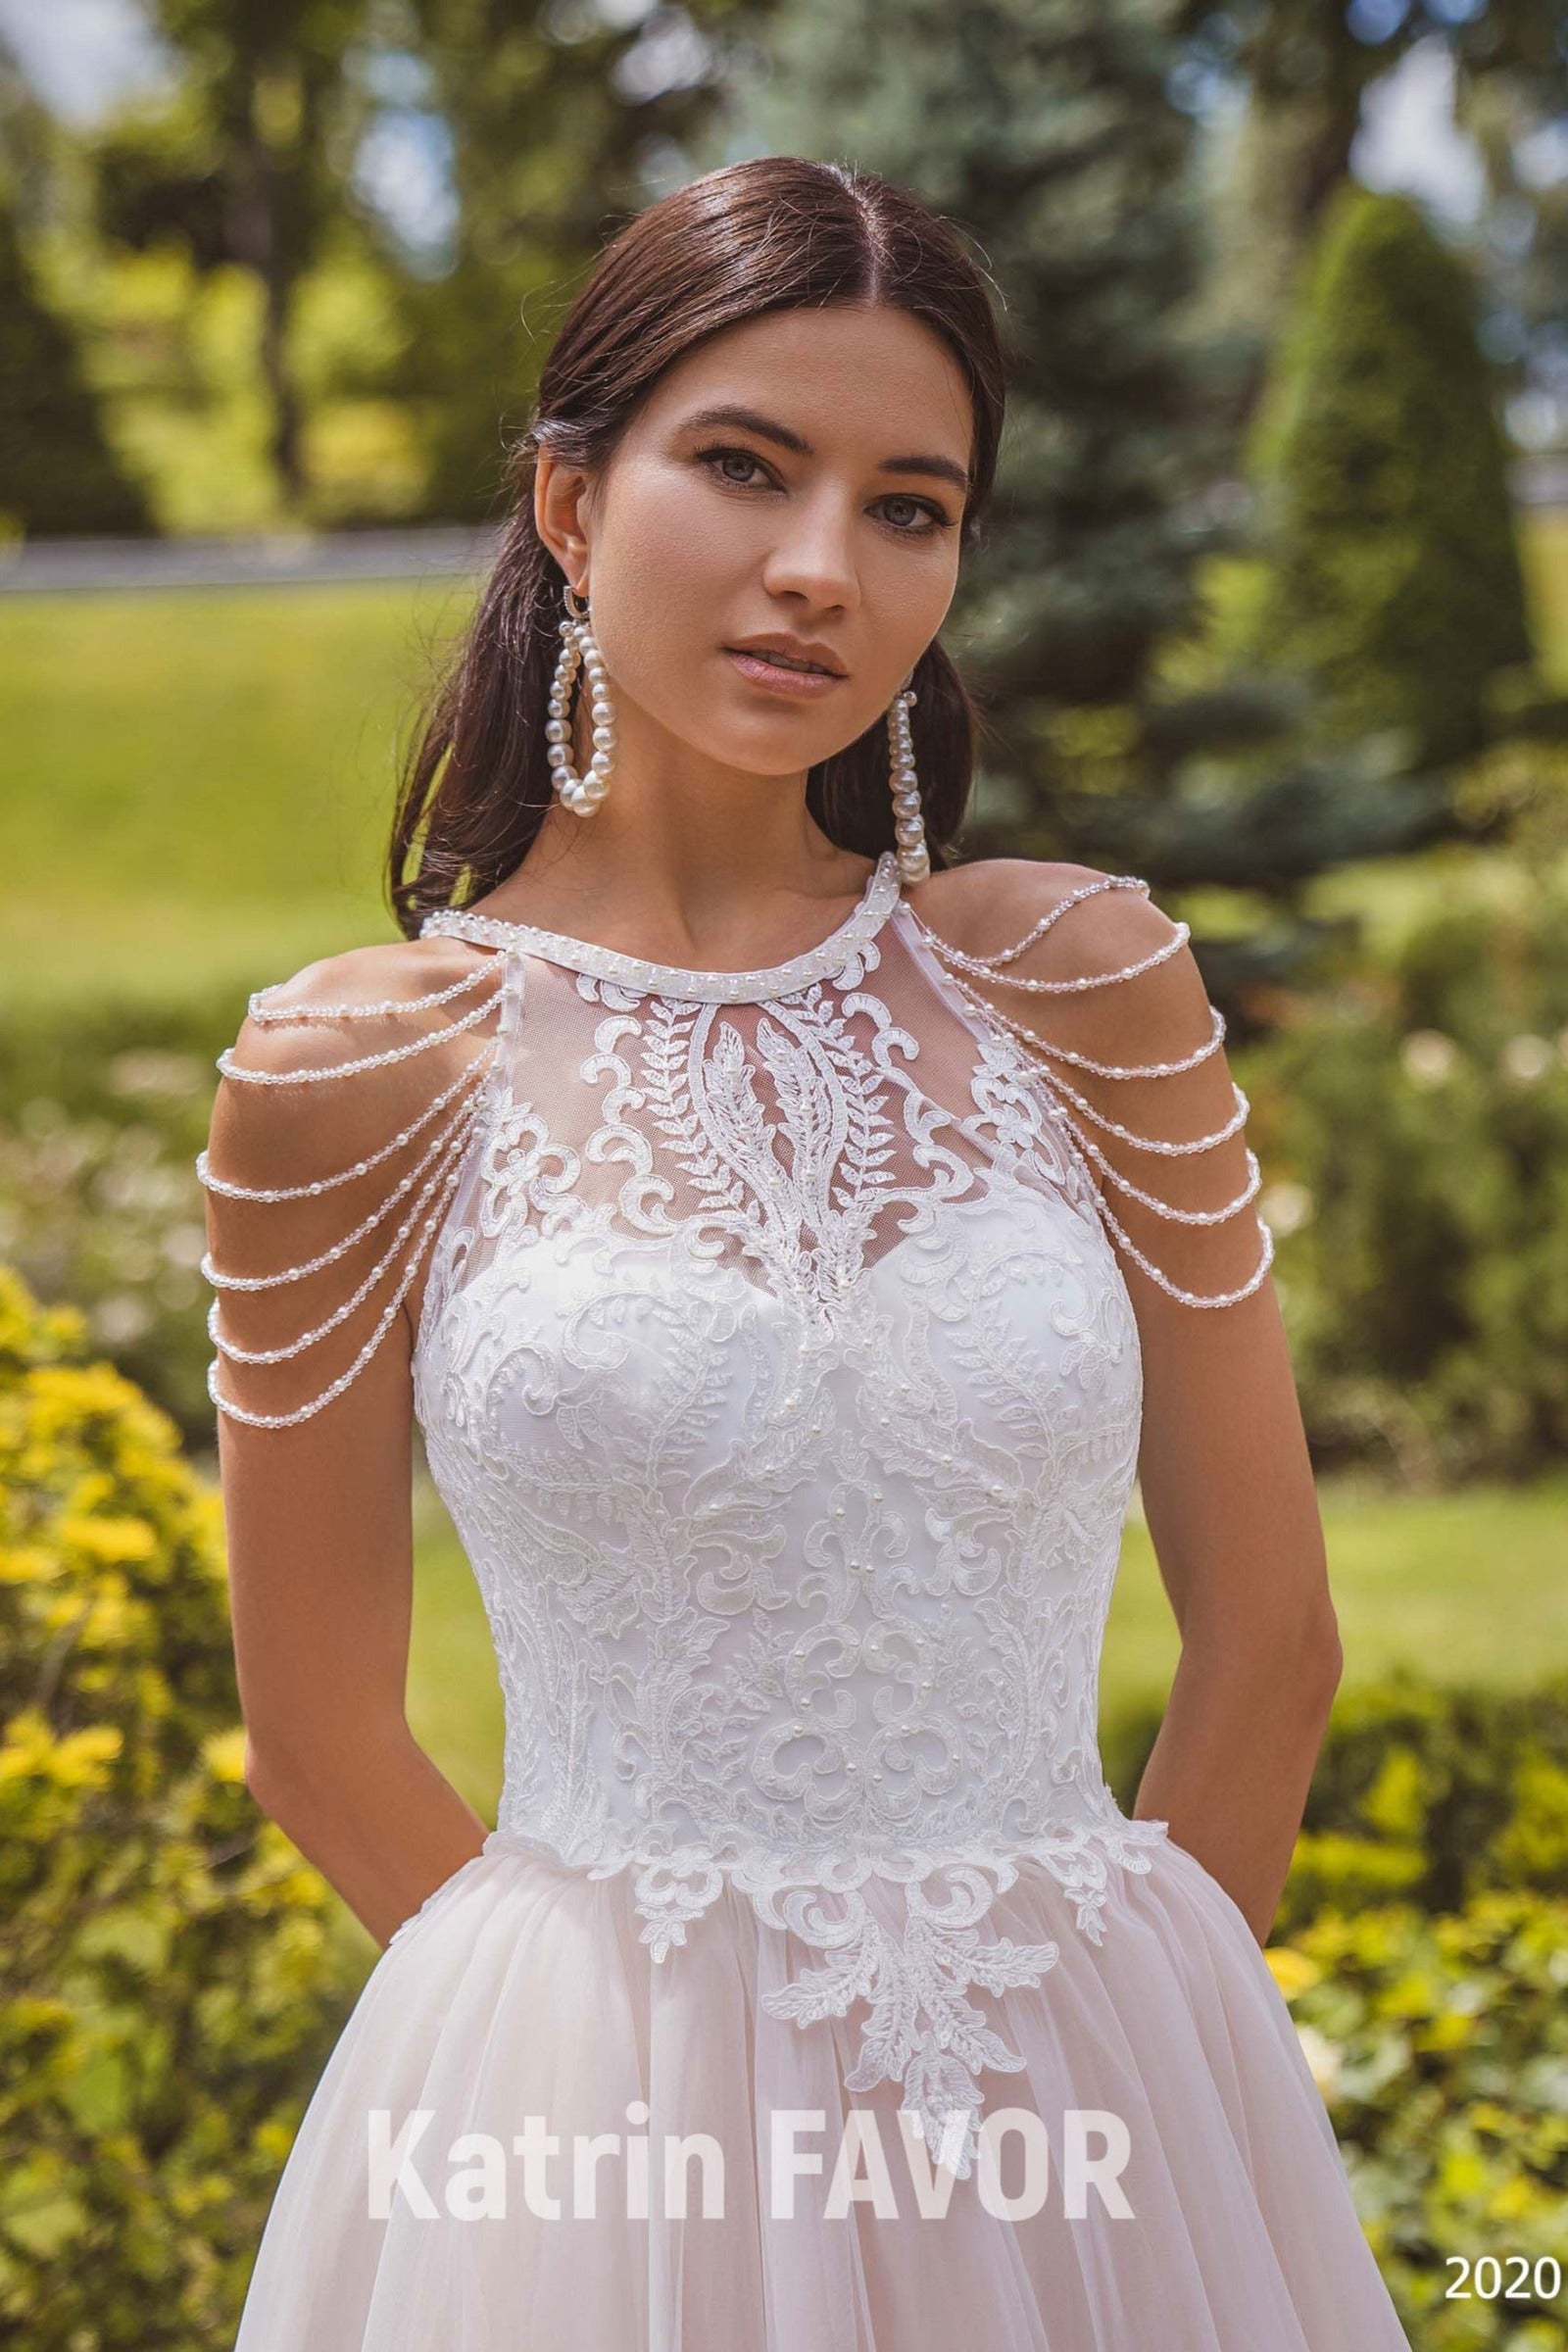 KatrinFAVORboutique-Long sleeve modest wedding dress